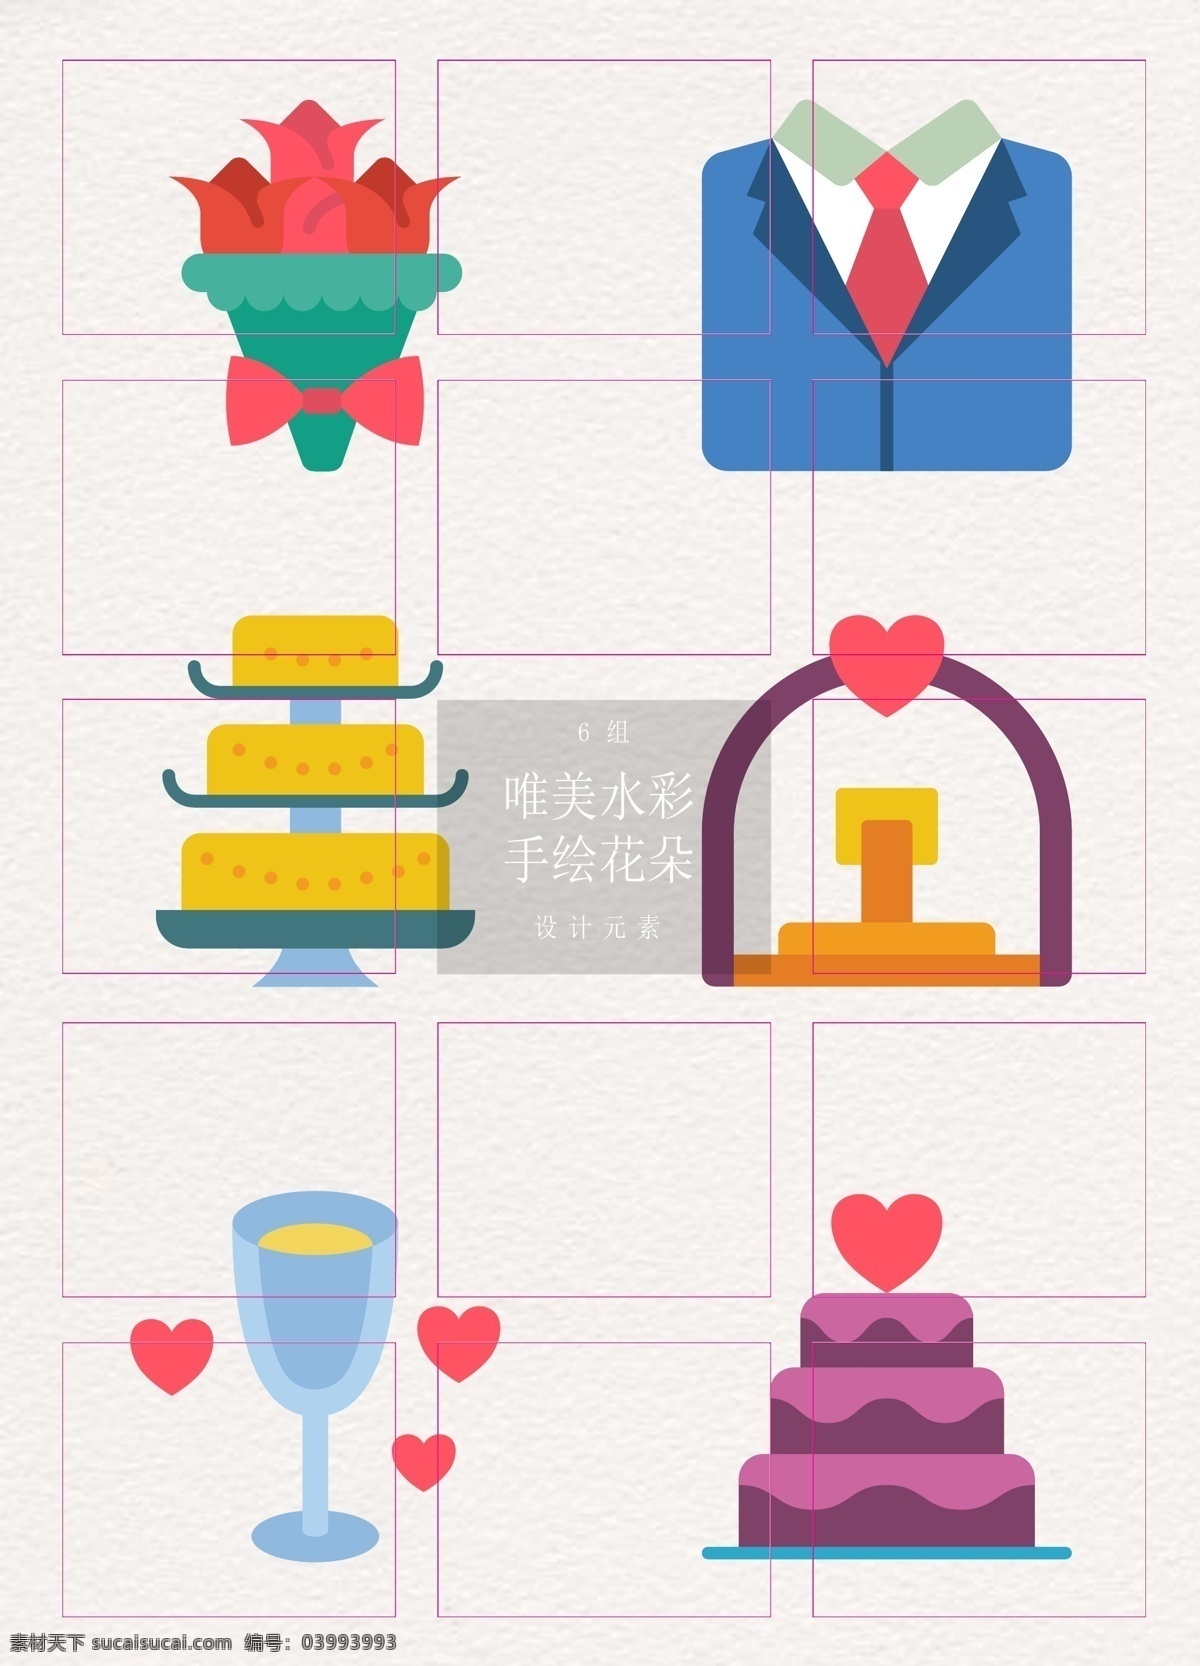 婚礼 元素 矢量 图标 icon 简约 扁平化 图标设计 捧花 香槟 婚礼元素 西装礼服 婚礼蛋糕 圣坛